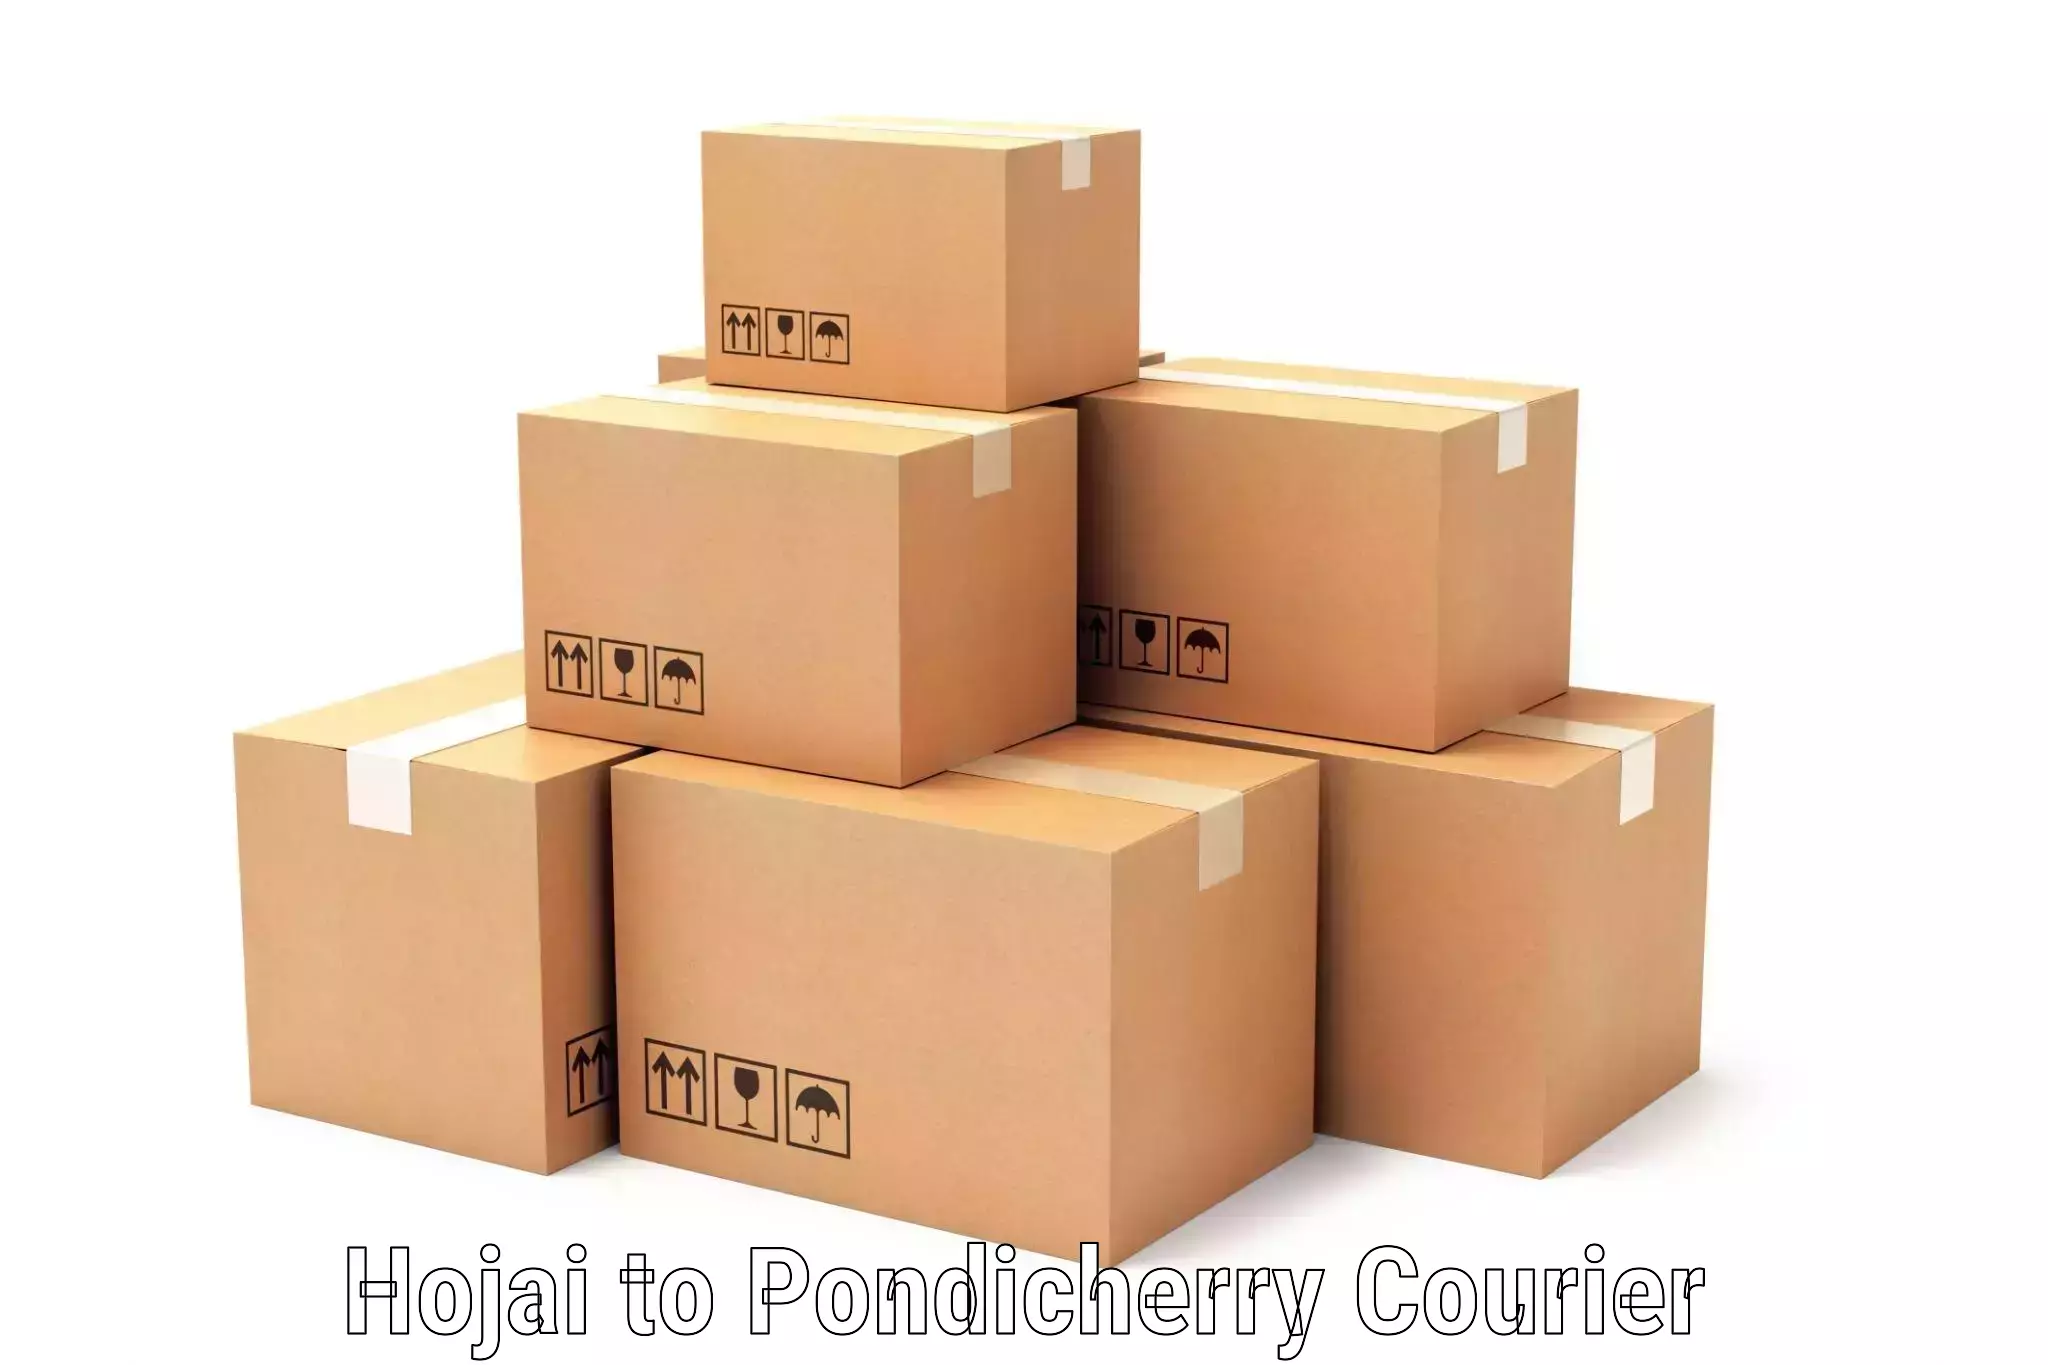 Doorstep delivery service Hojai to Pondicherry